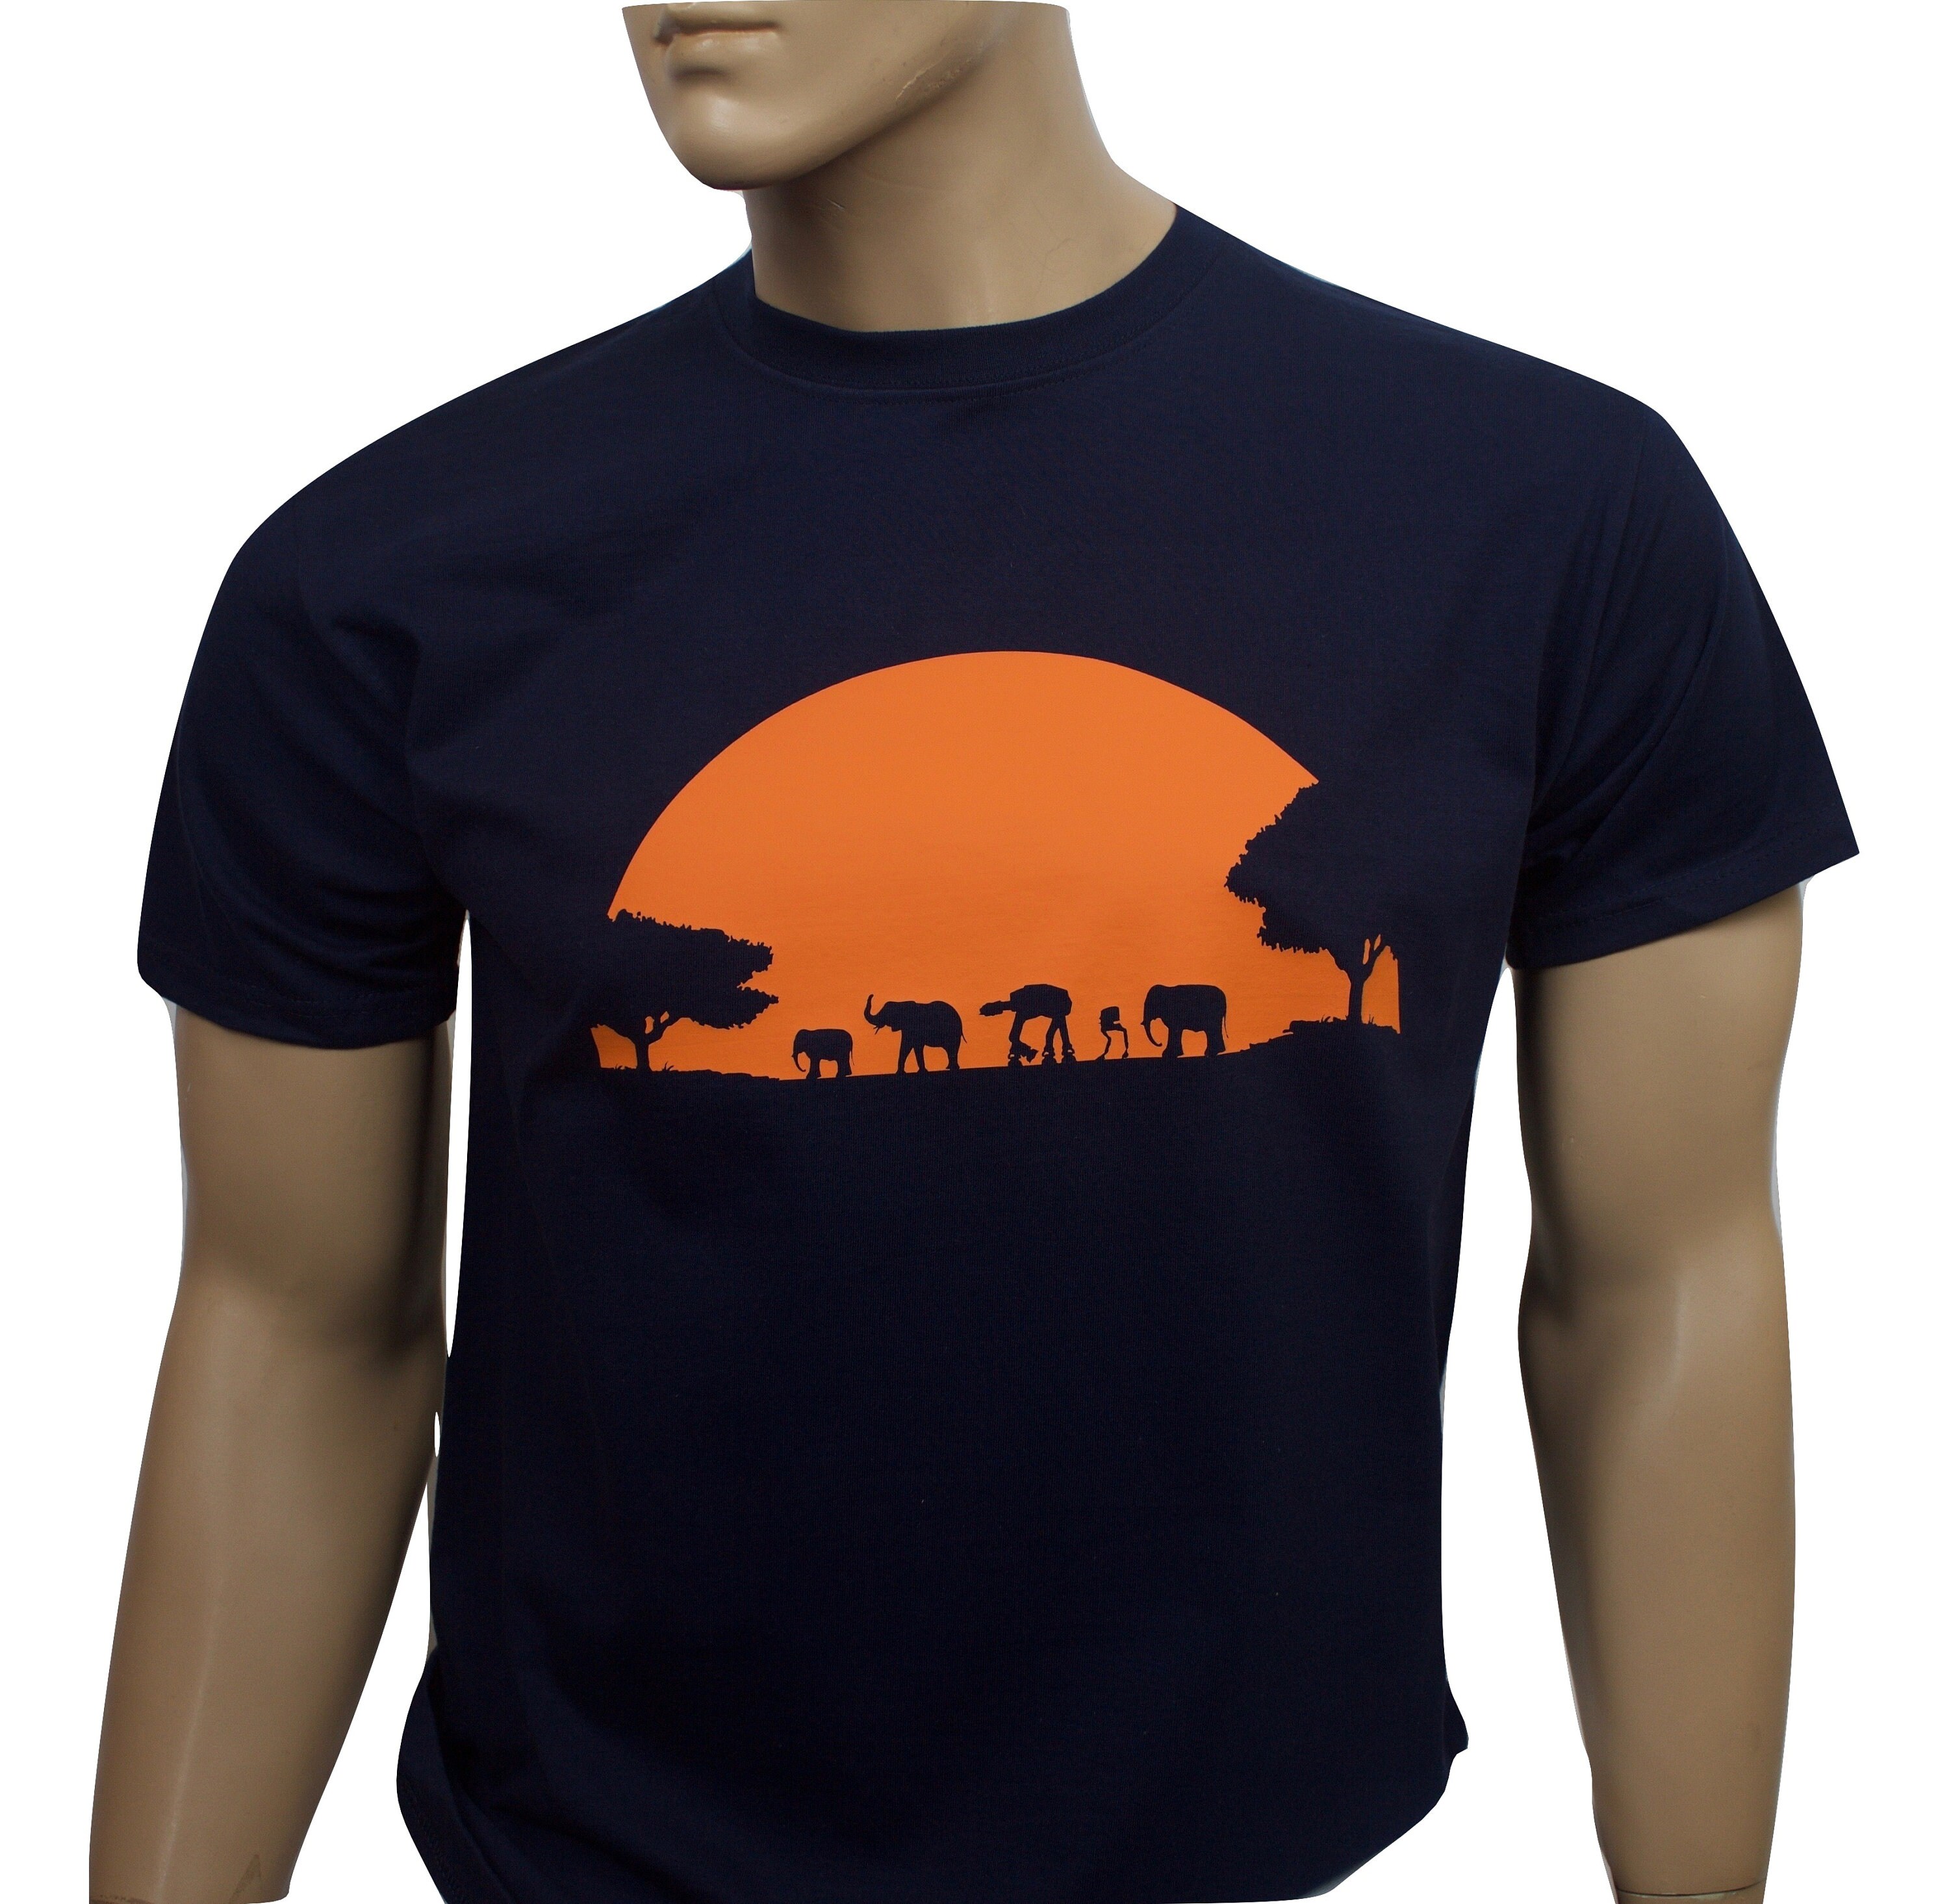 Star Wars inspired regular fit t-shirt | Etsy